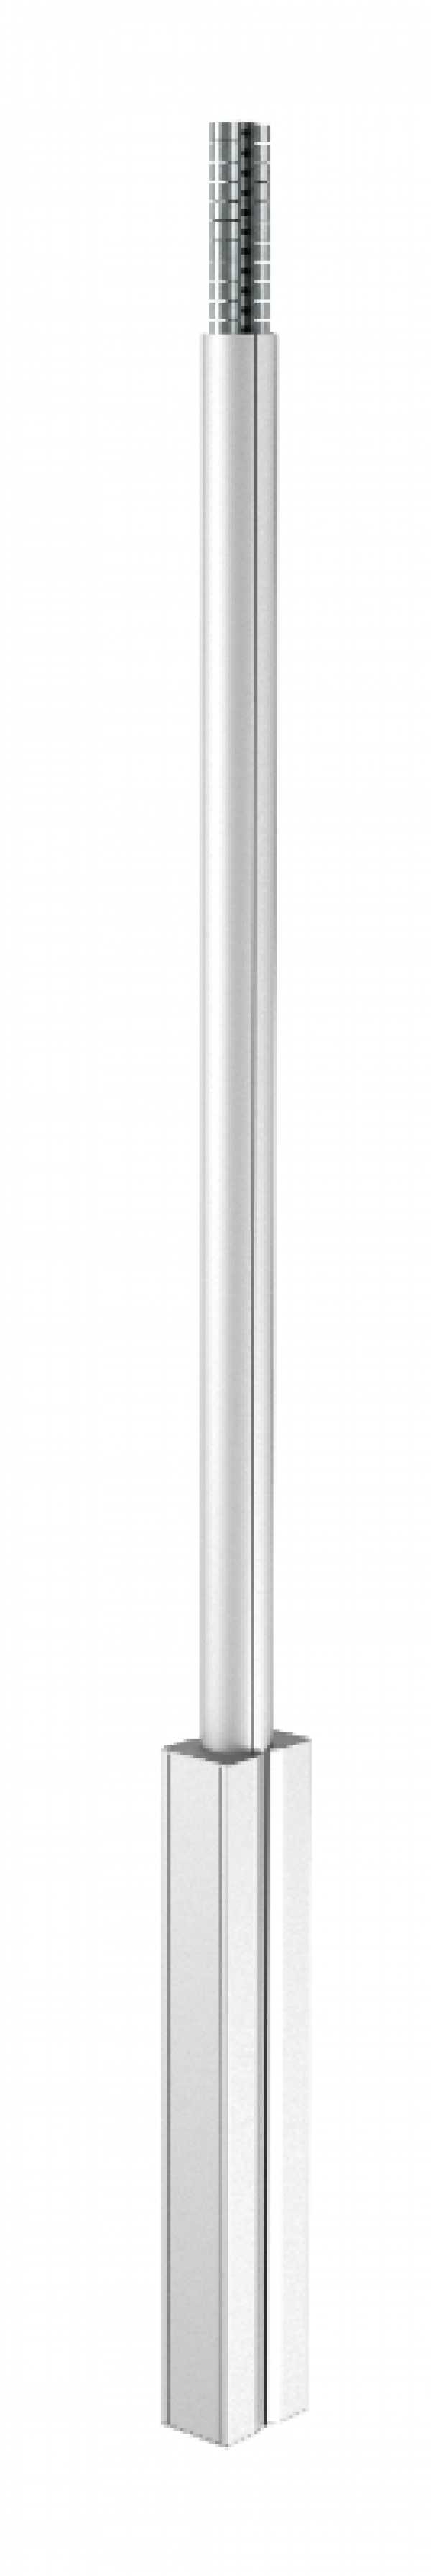 6289050 - OBO BETTERMANN Электромонтажная колонна 2,3-3,8 м 2-х сторонняя 100x140x2300 мм (алюминий,белый) (ISS140100FRW).